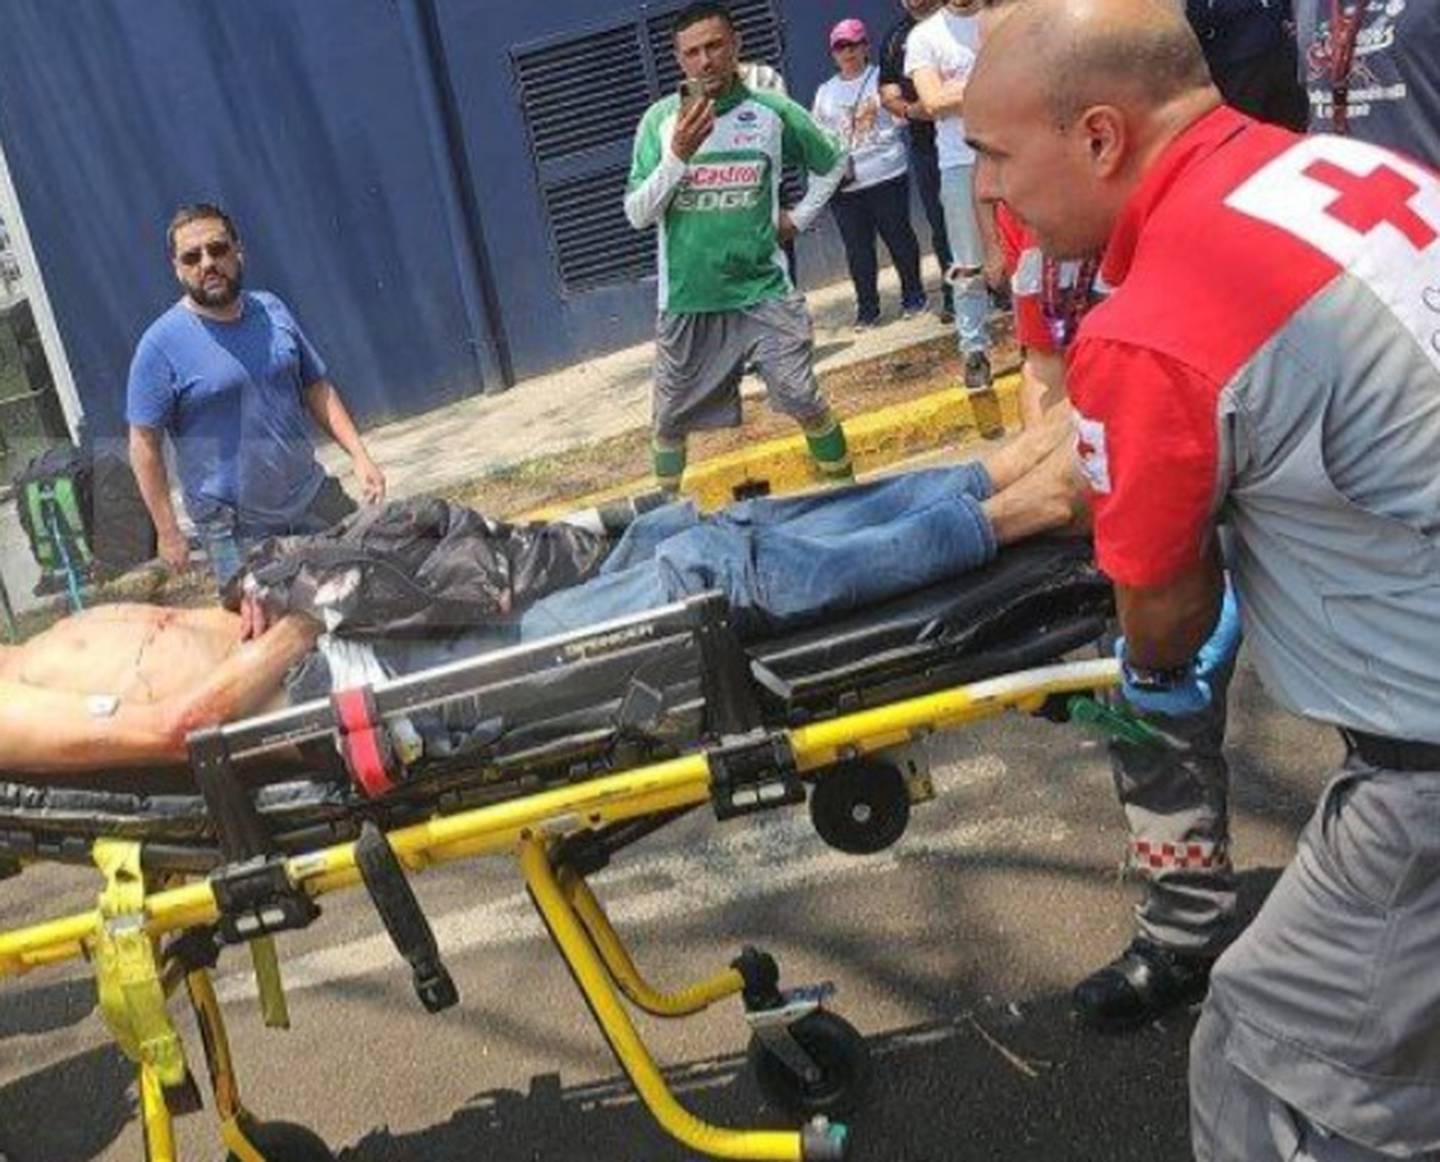 La Cruz Roja trasladó al herido al Hospital San Juan de Dios, que está a menos de un kilómetro del sitio. Foto: Cortesía.